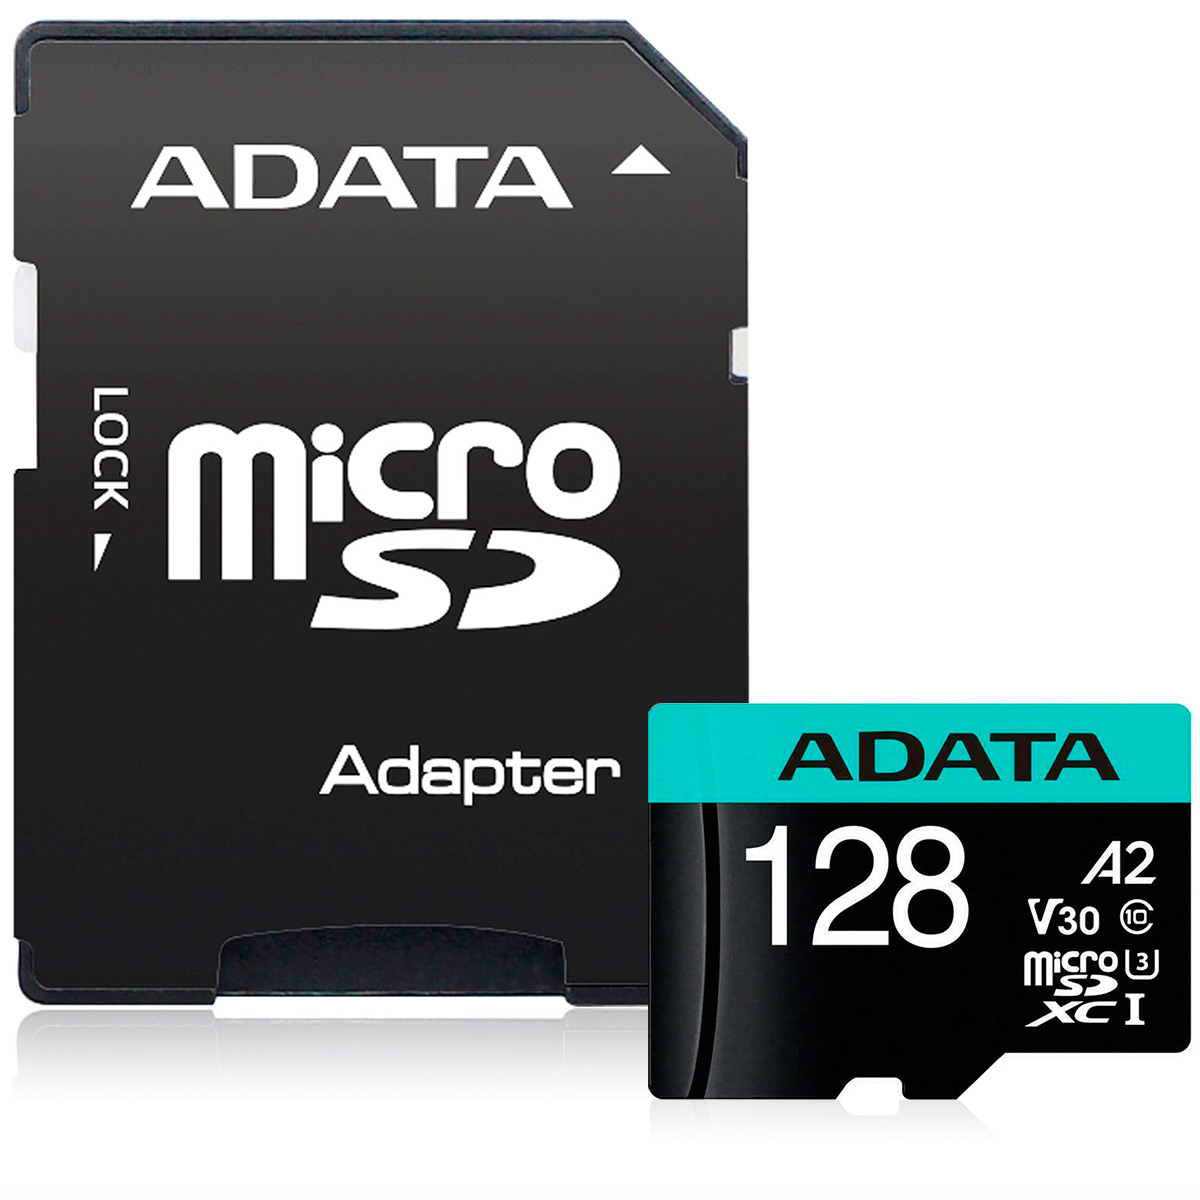 Cartão 128GB Micro SD com adaptador SD - Classe 10 - Velocidade até 100MB/s - Adata AUSDX128GUI3V30SA2-RA1